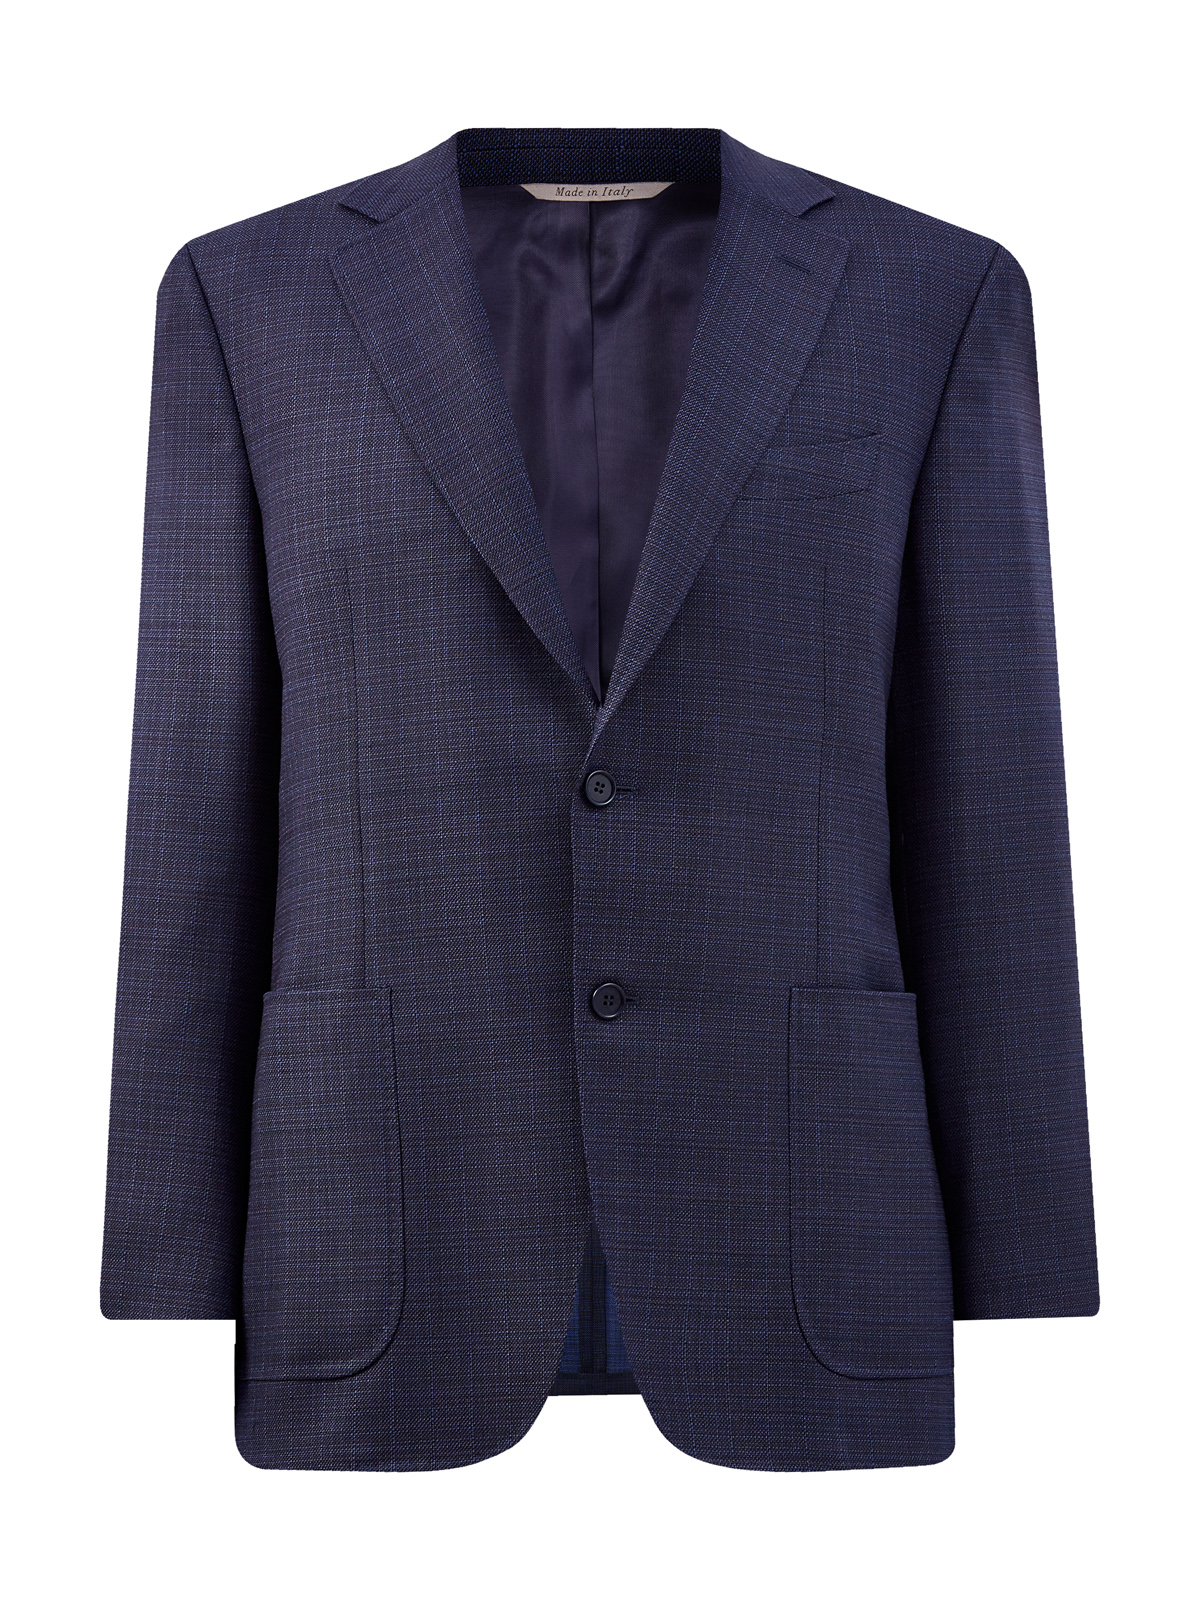 Однобортный пиджак из эластичной шерсти в тонкую клетку CANALI, цвет синий, размер 50;52;54;56